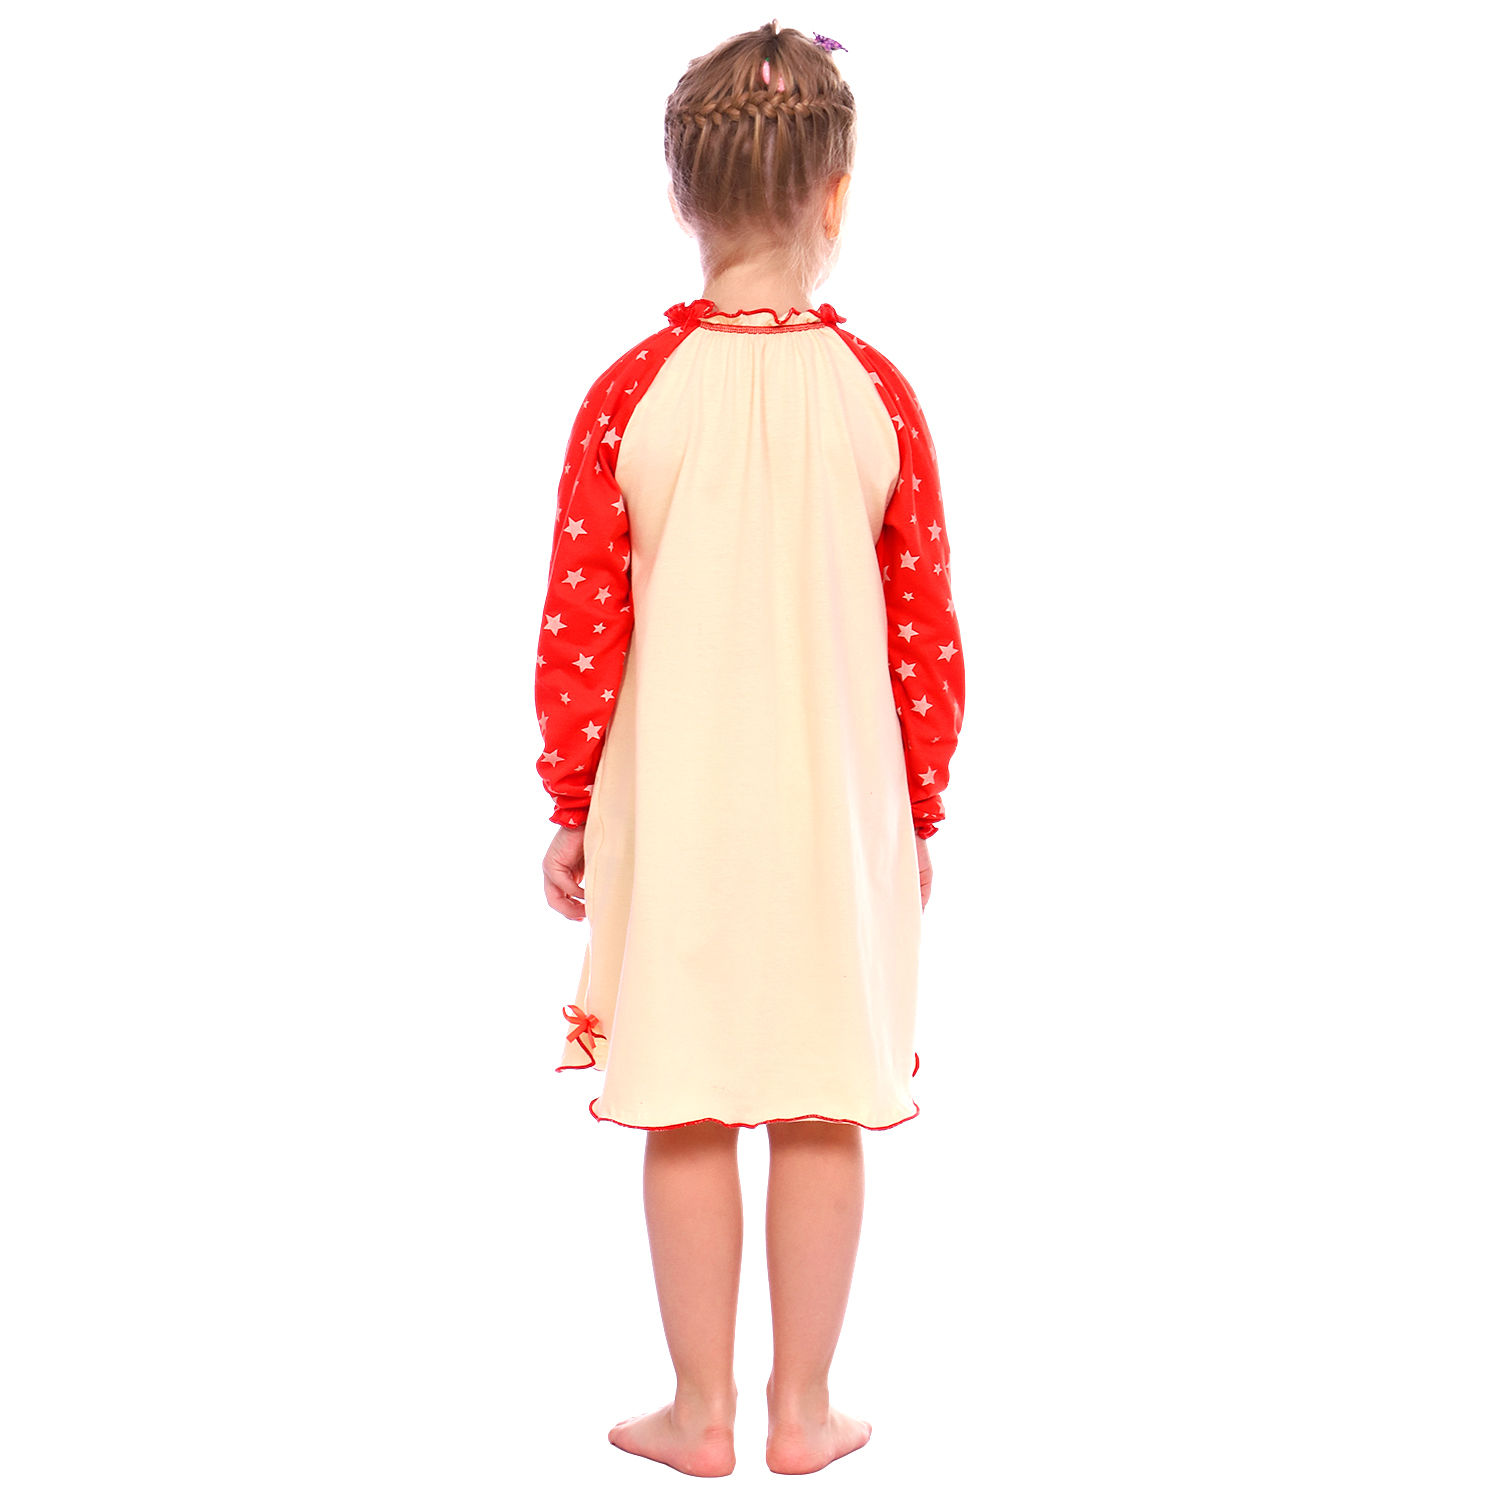 Сорочка ночная Детская Одежда S0505/молочный_красный - фото 5